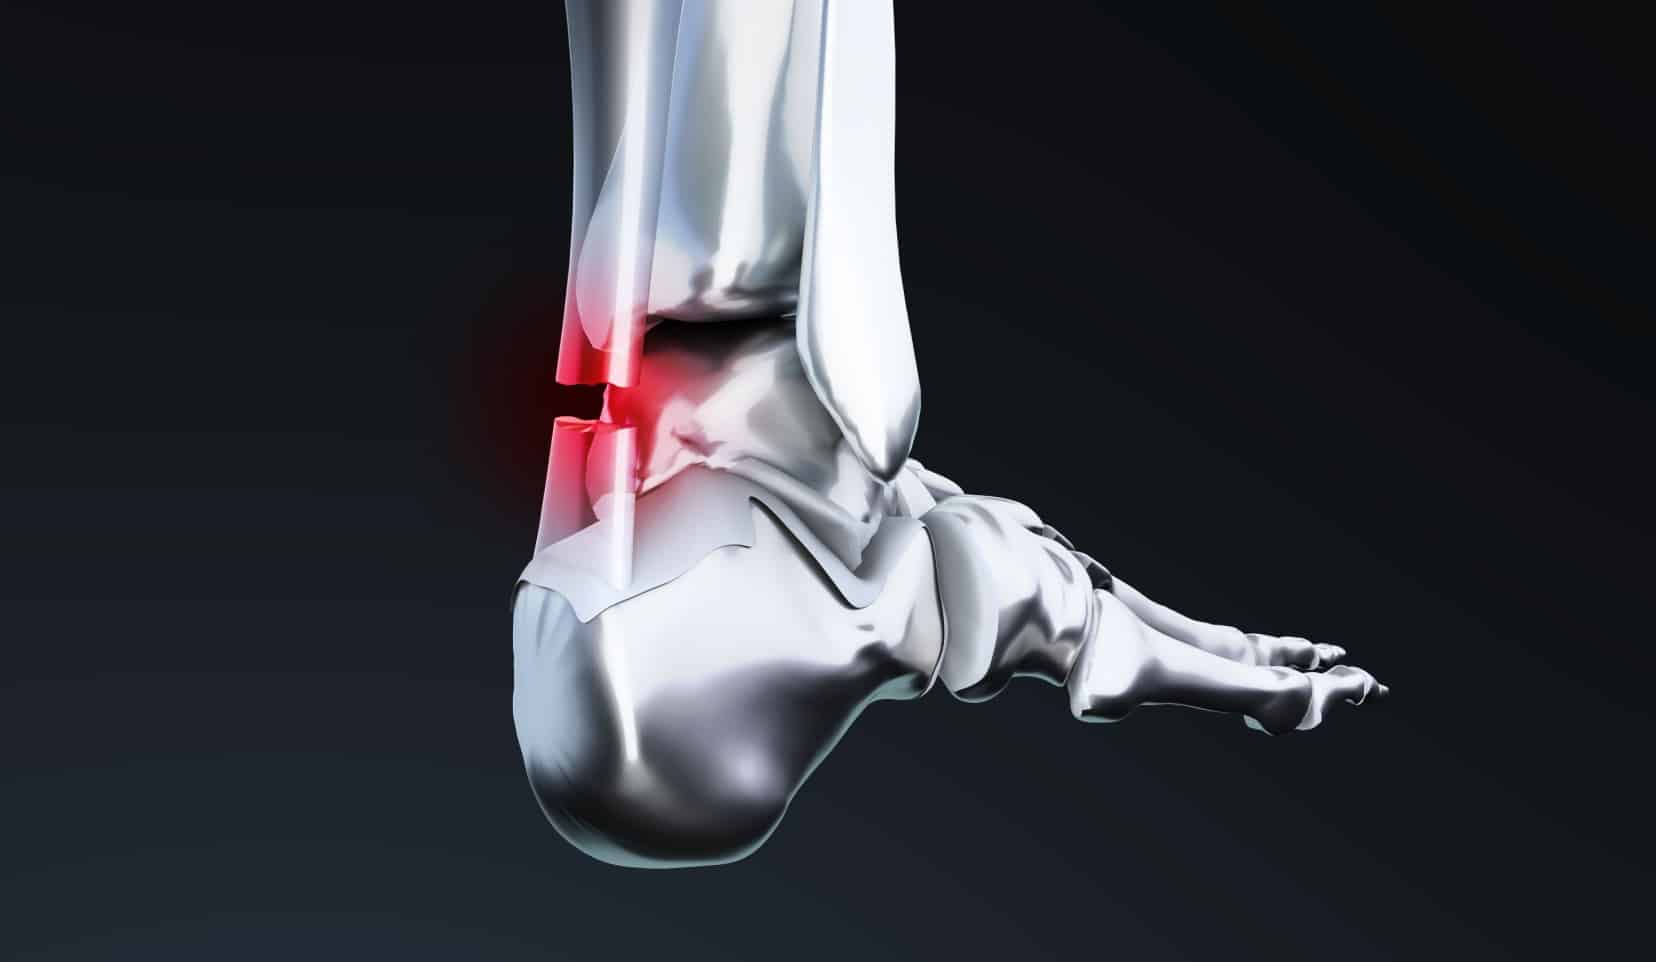 Suture tendon d'Achille : chirurgie pied | Chirurgien orthopédique | Bois-Guillaume | Dr Polle